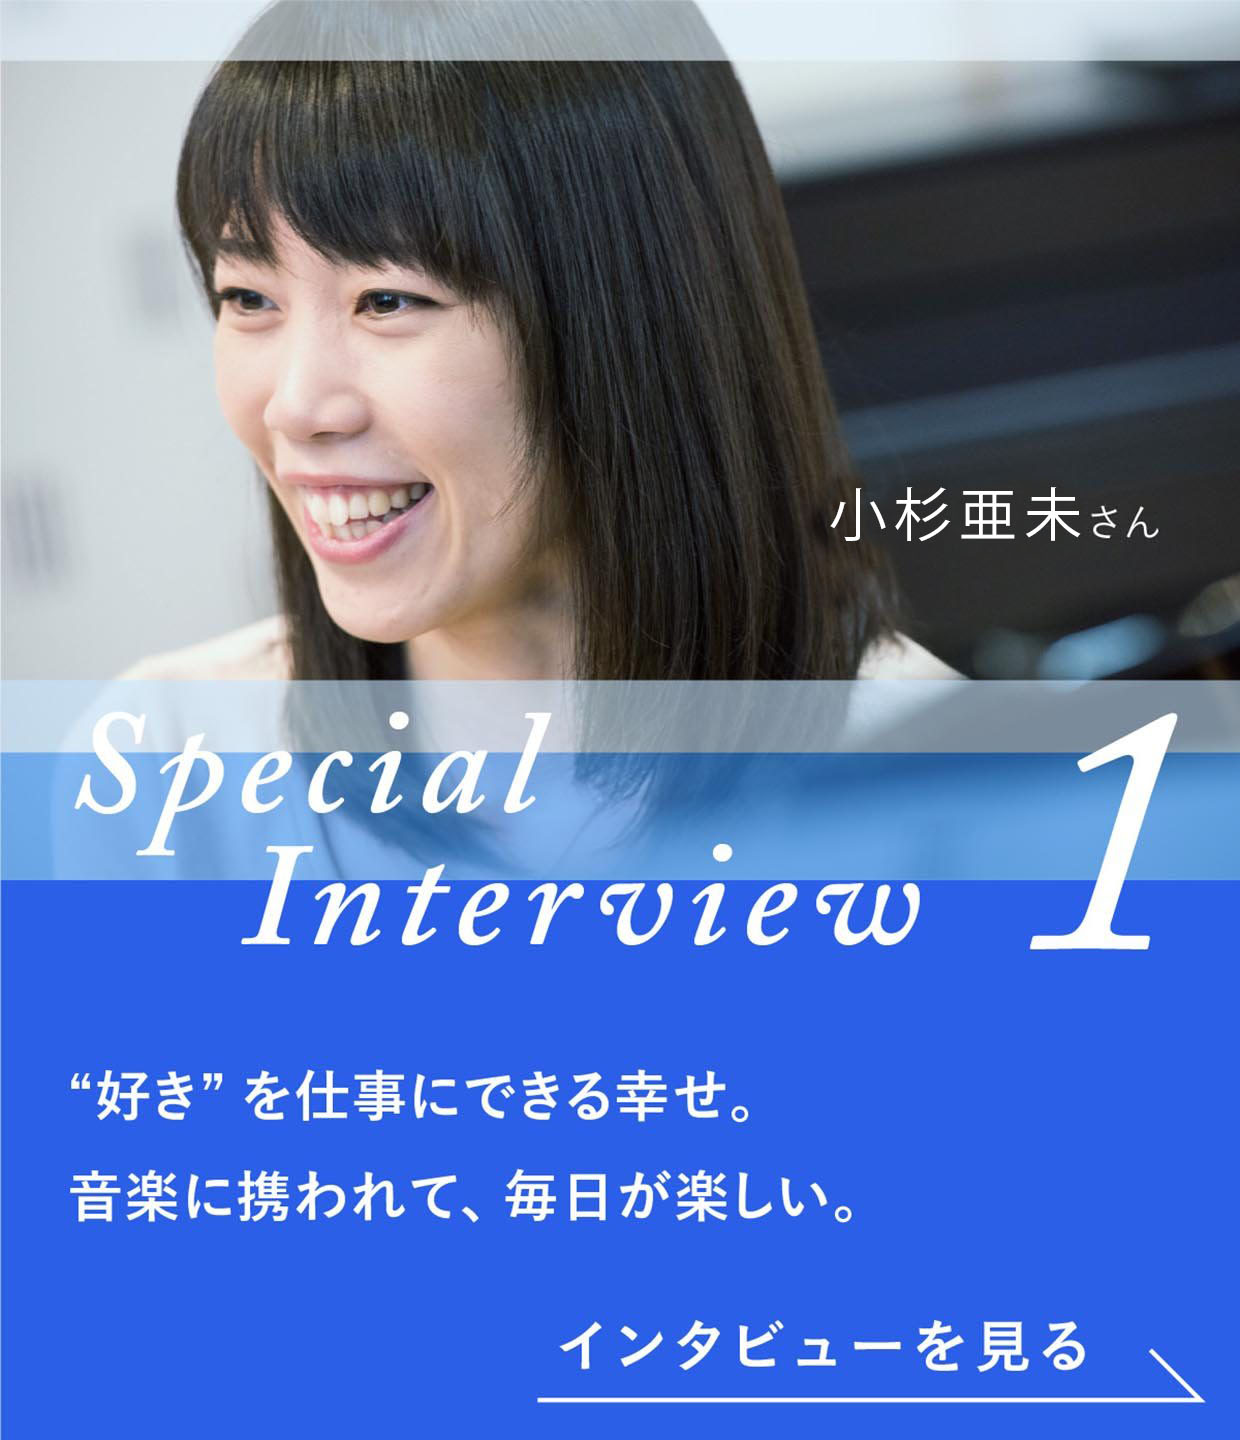 Special Interview1 煙山亜未さん 好きを仕事にできる幸せ。音楽に携われて、毎日が楽しい。インタビューを見る